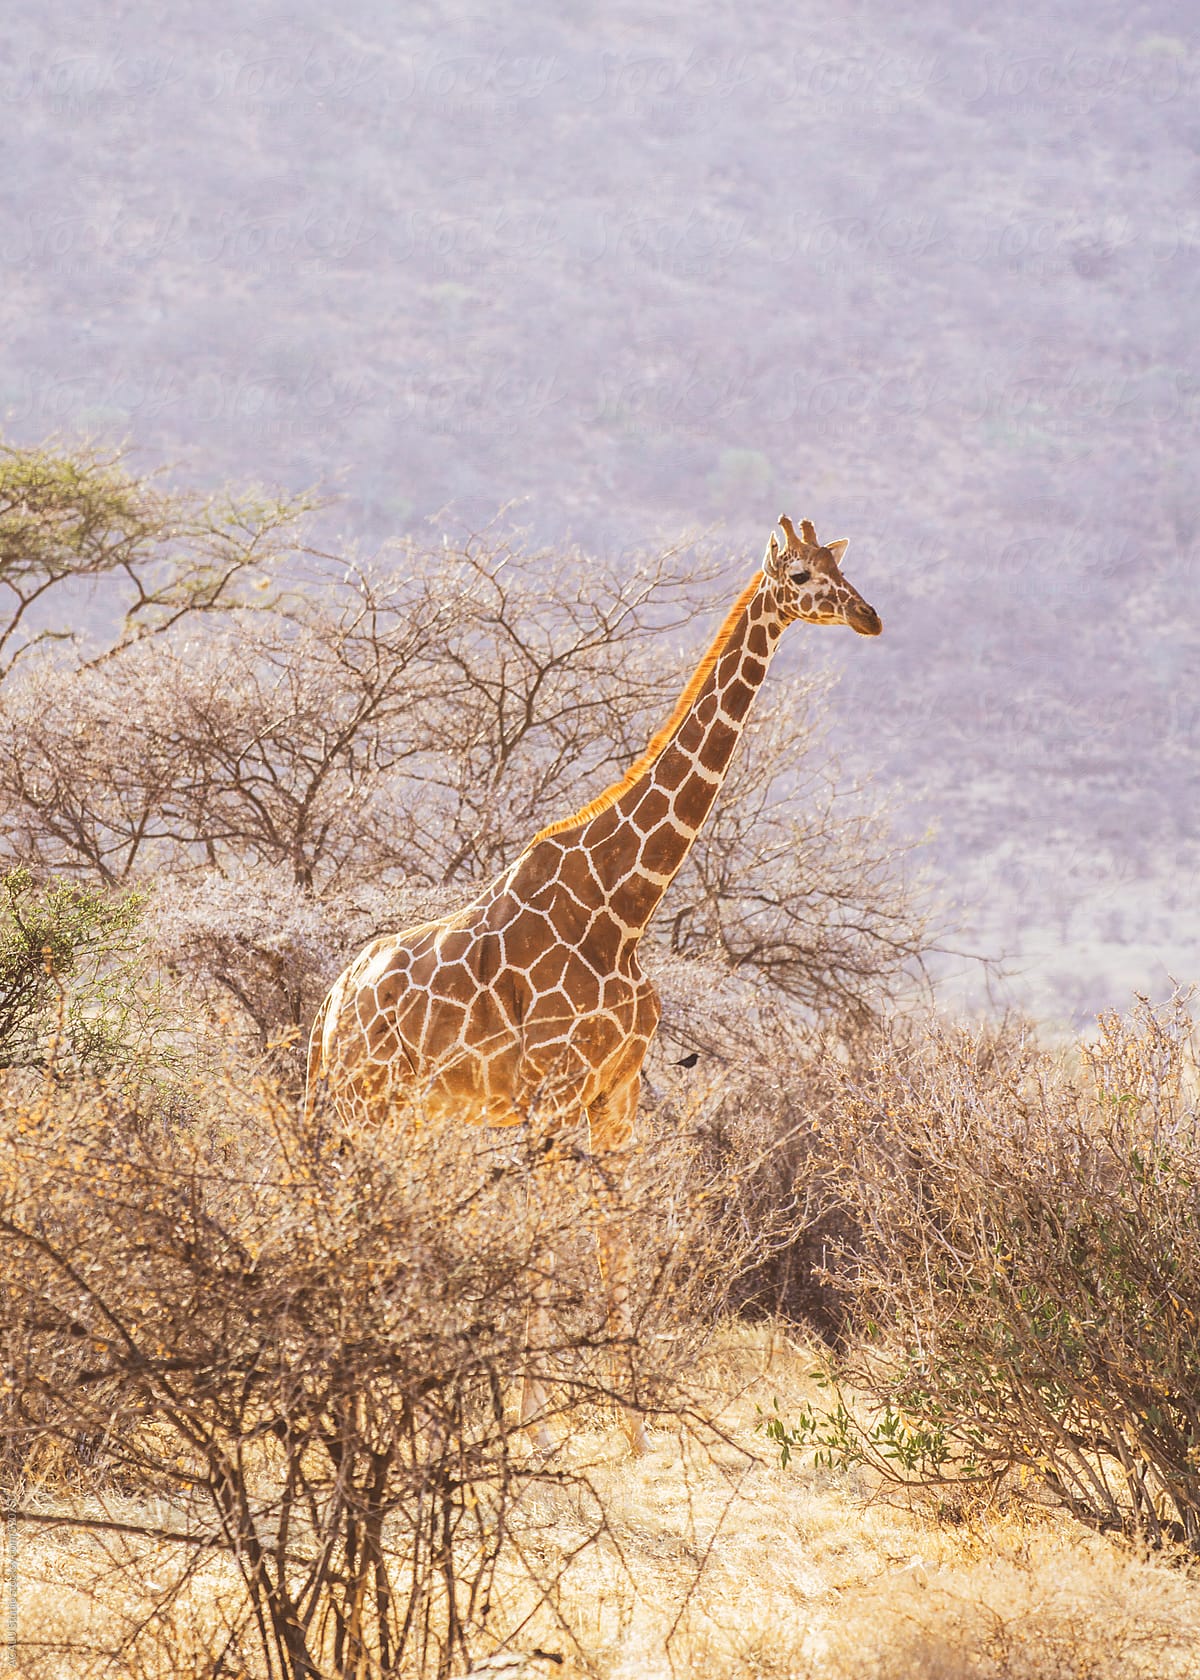 Reticulated giraffe in Africa